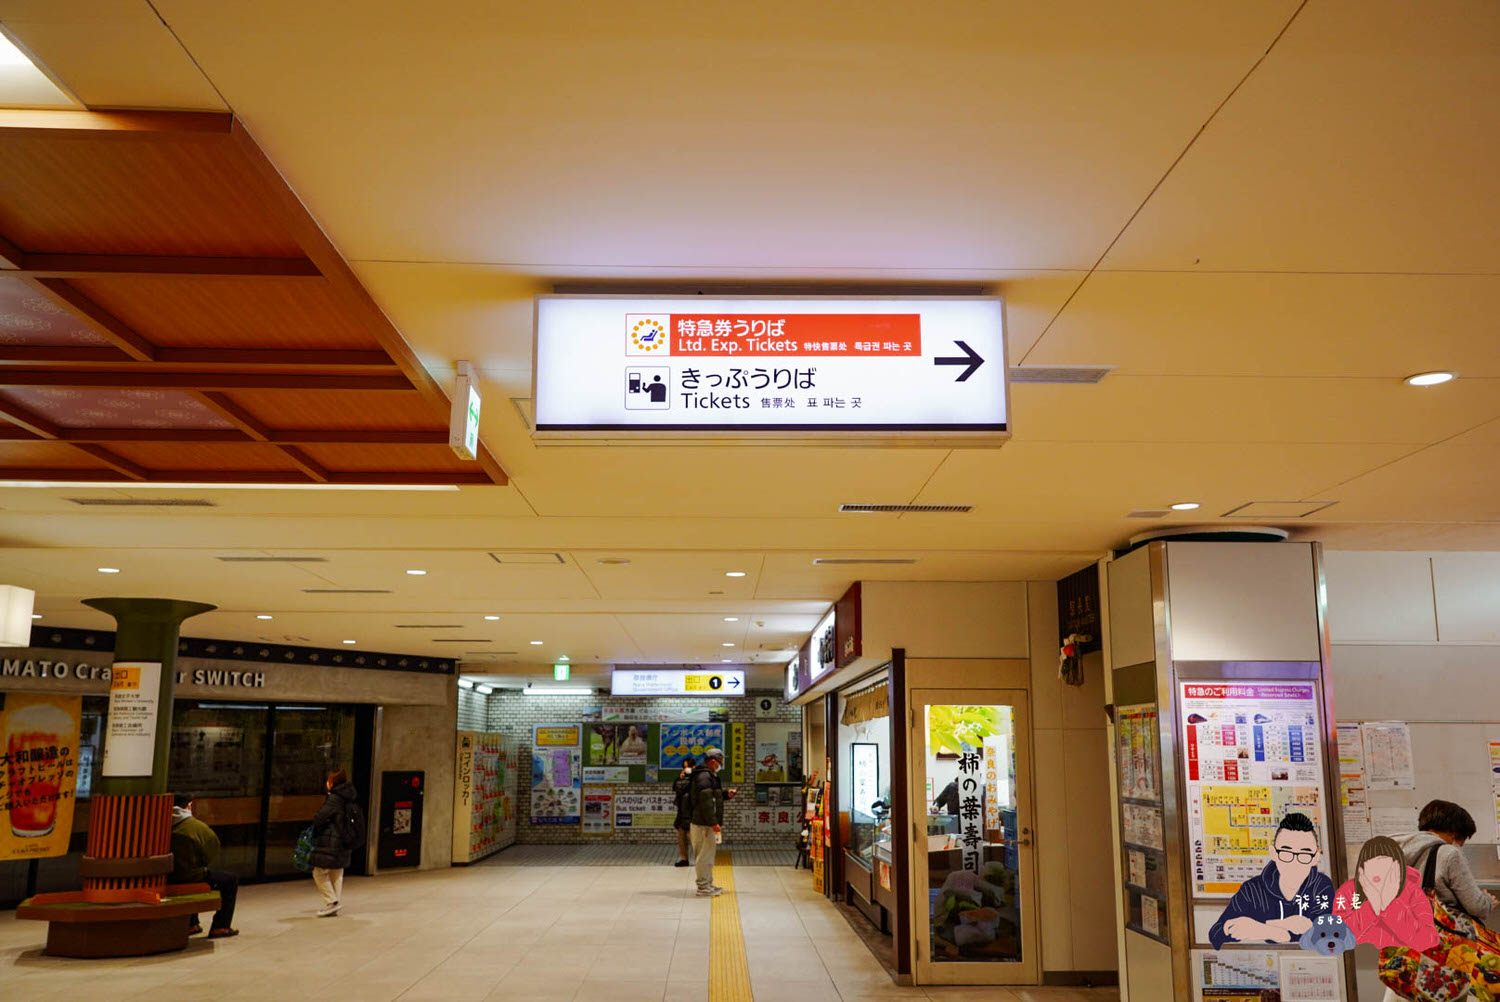 近鐵周遊券KINTETSU RAIL PASS兌換地點 (1)